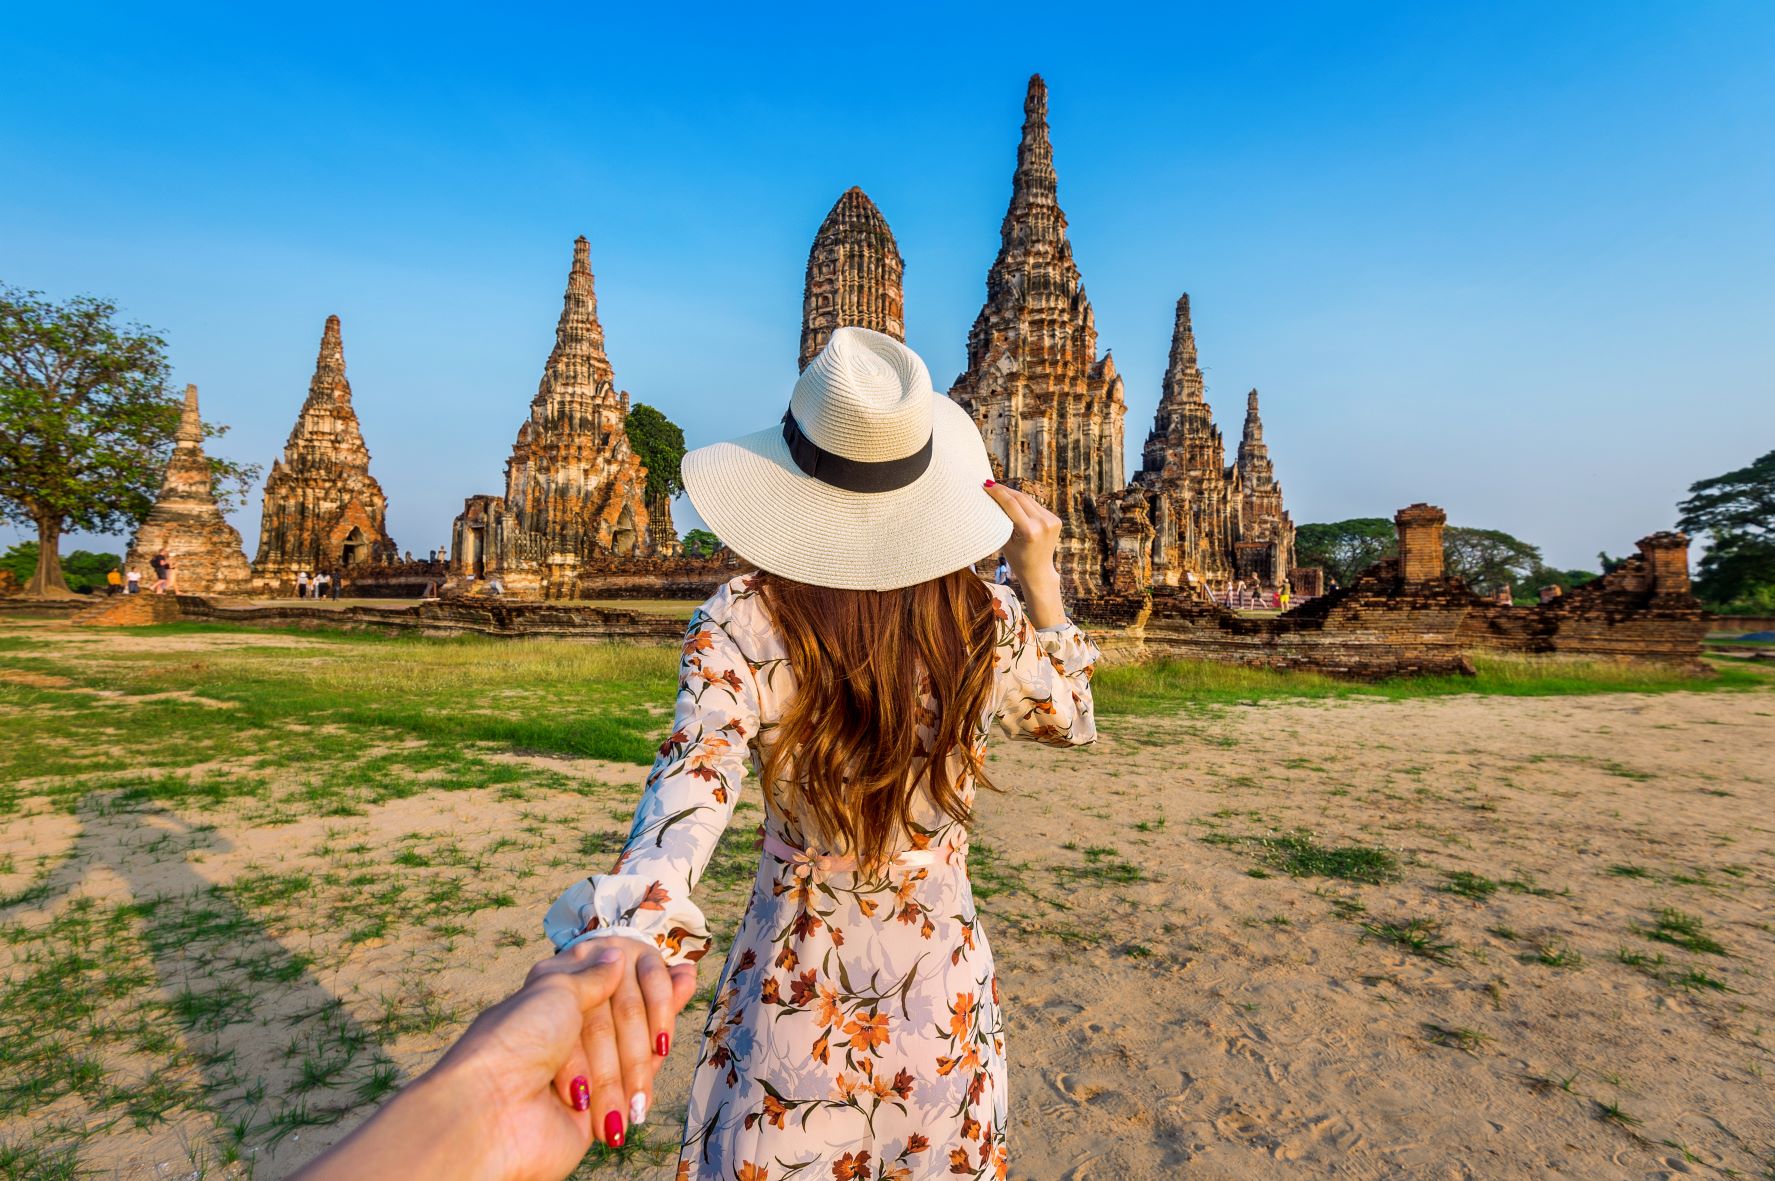 בשביל הרומנטיקה: המדריך המלא לחופשה זוגית בתאילנד